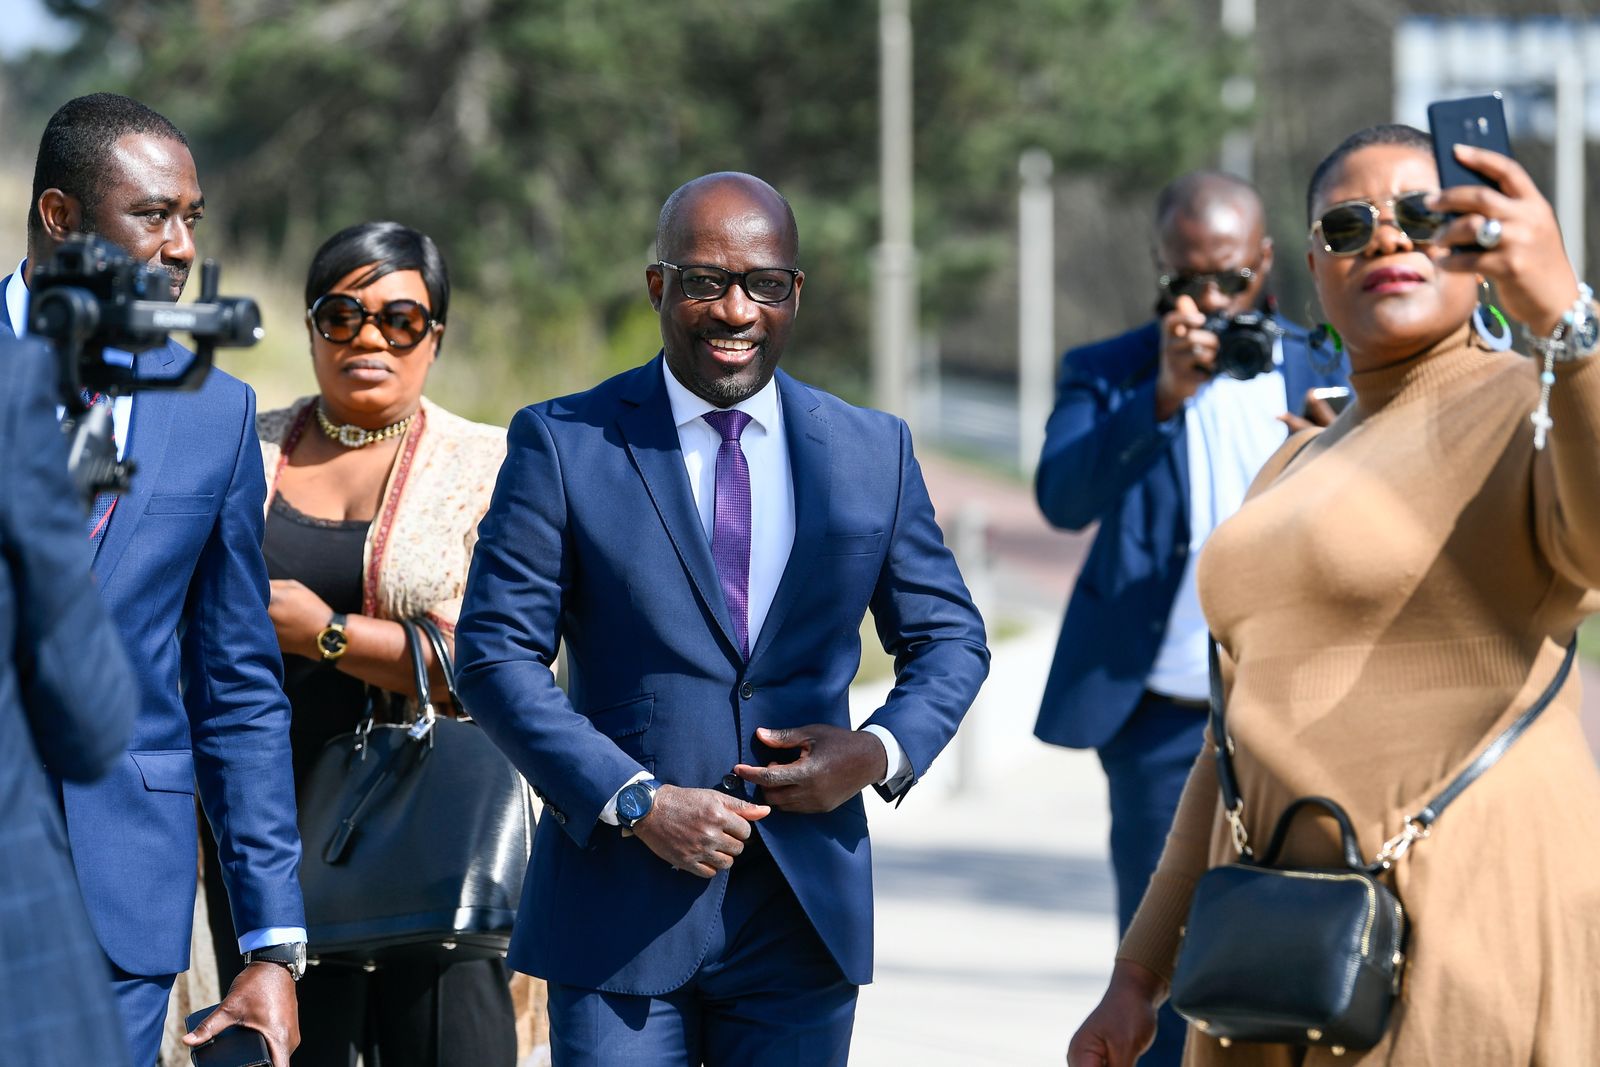 وزير الشباب السابق في ساحل العاج تشارلز بلي غودي يصل إلى المحكمة الجنائية الدولية في لاهاي بهولندا. 31 مارس 2021.  - REUTERS